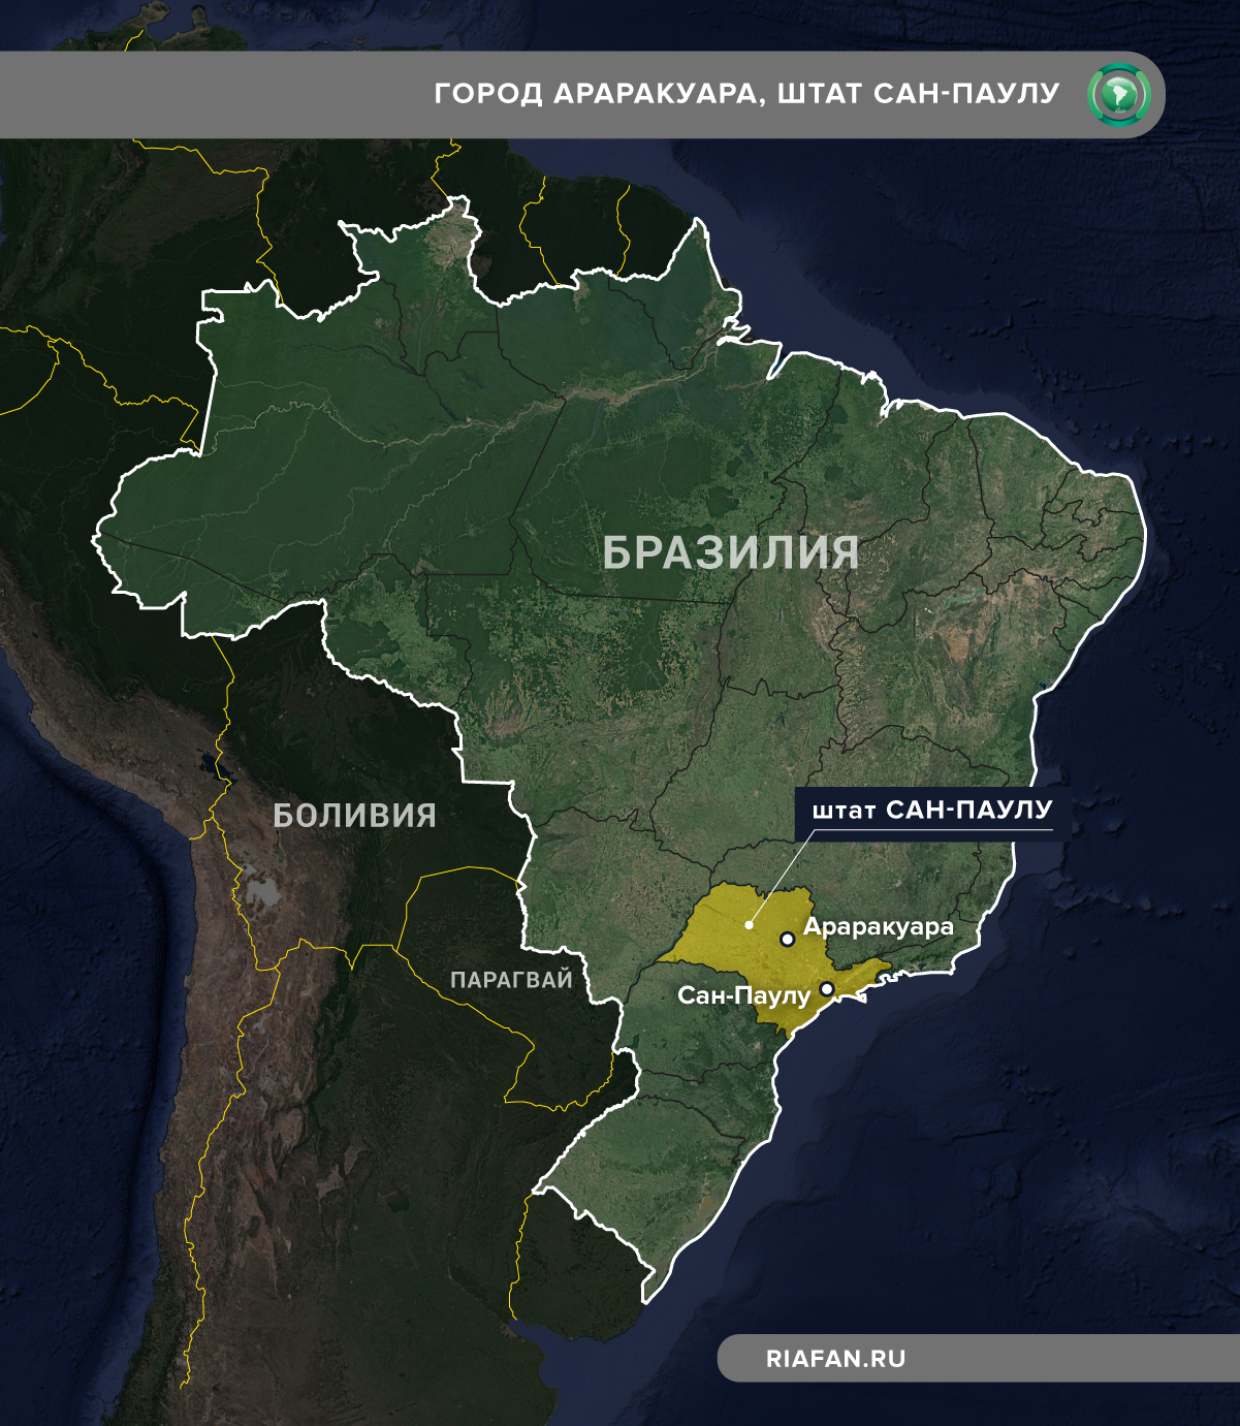 Сколько стран в бразилии